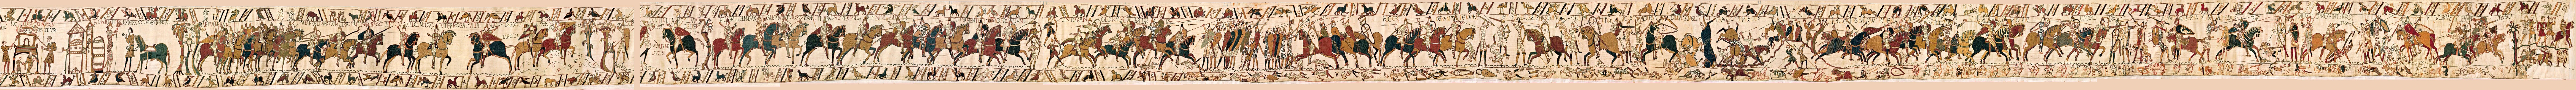 tapisserie de Bayeux 3